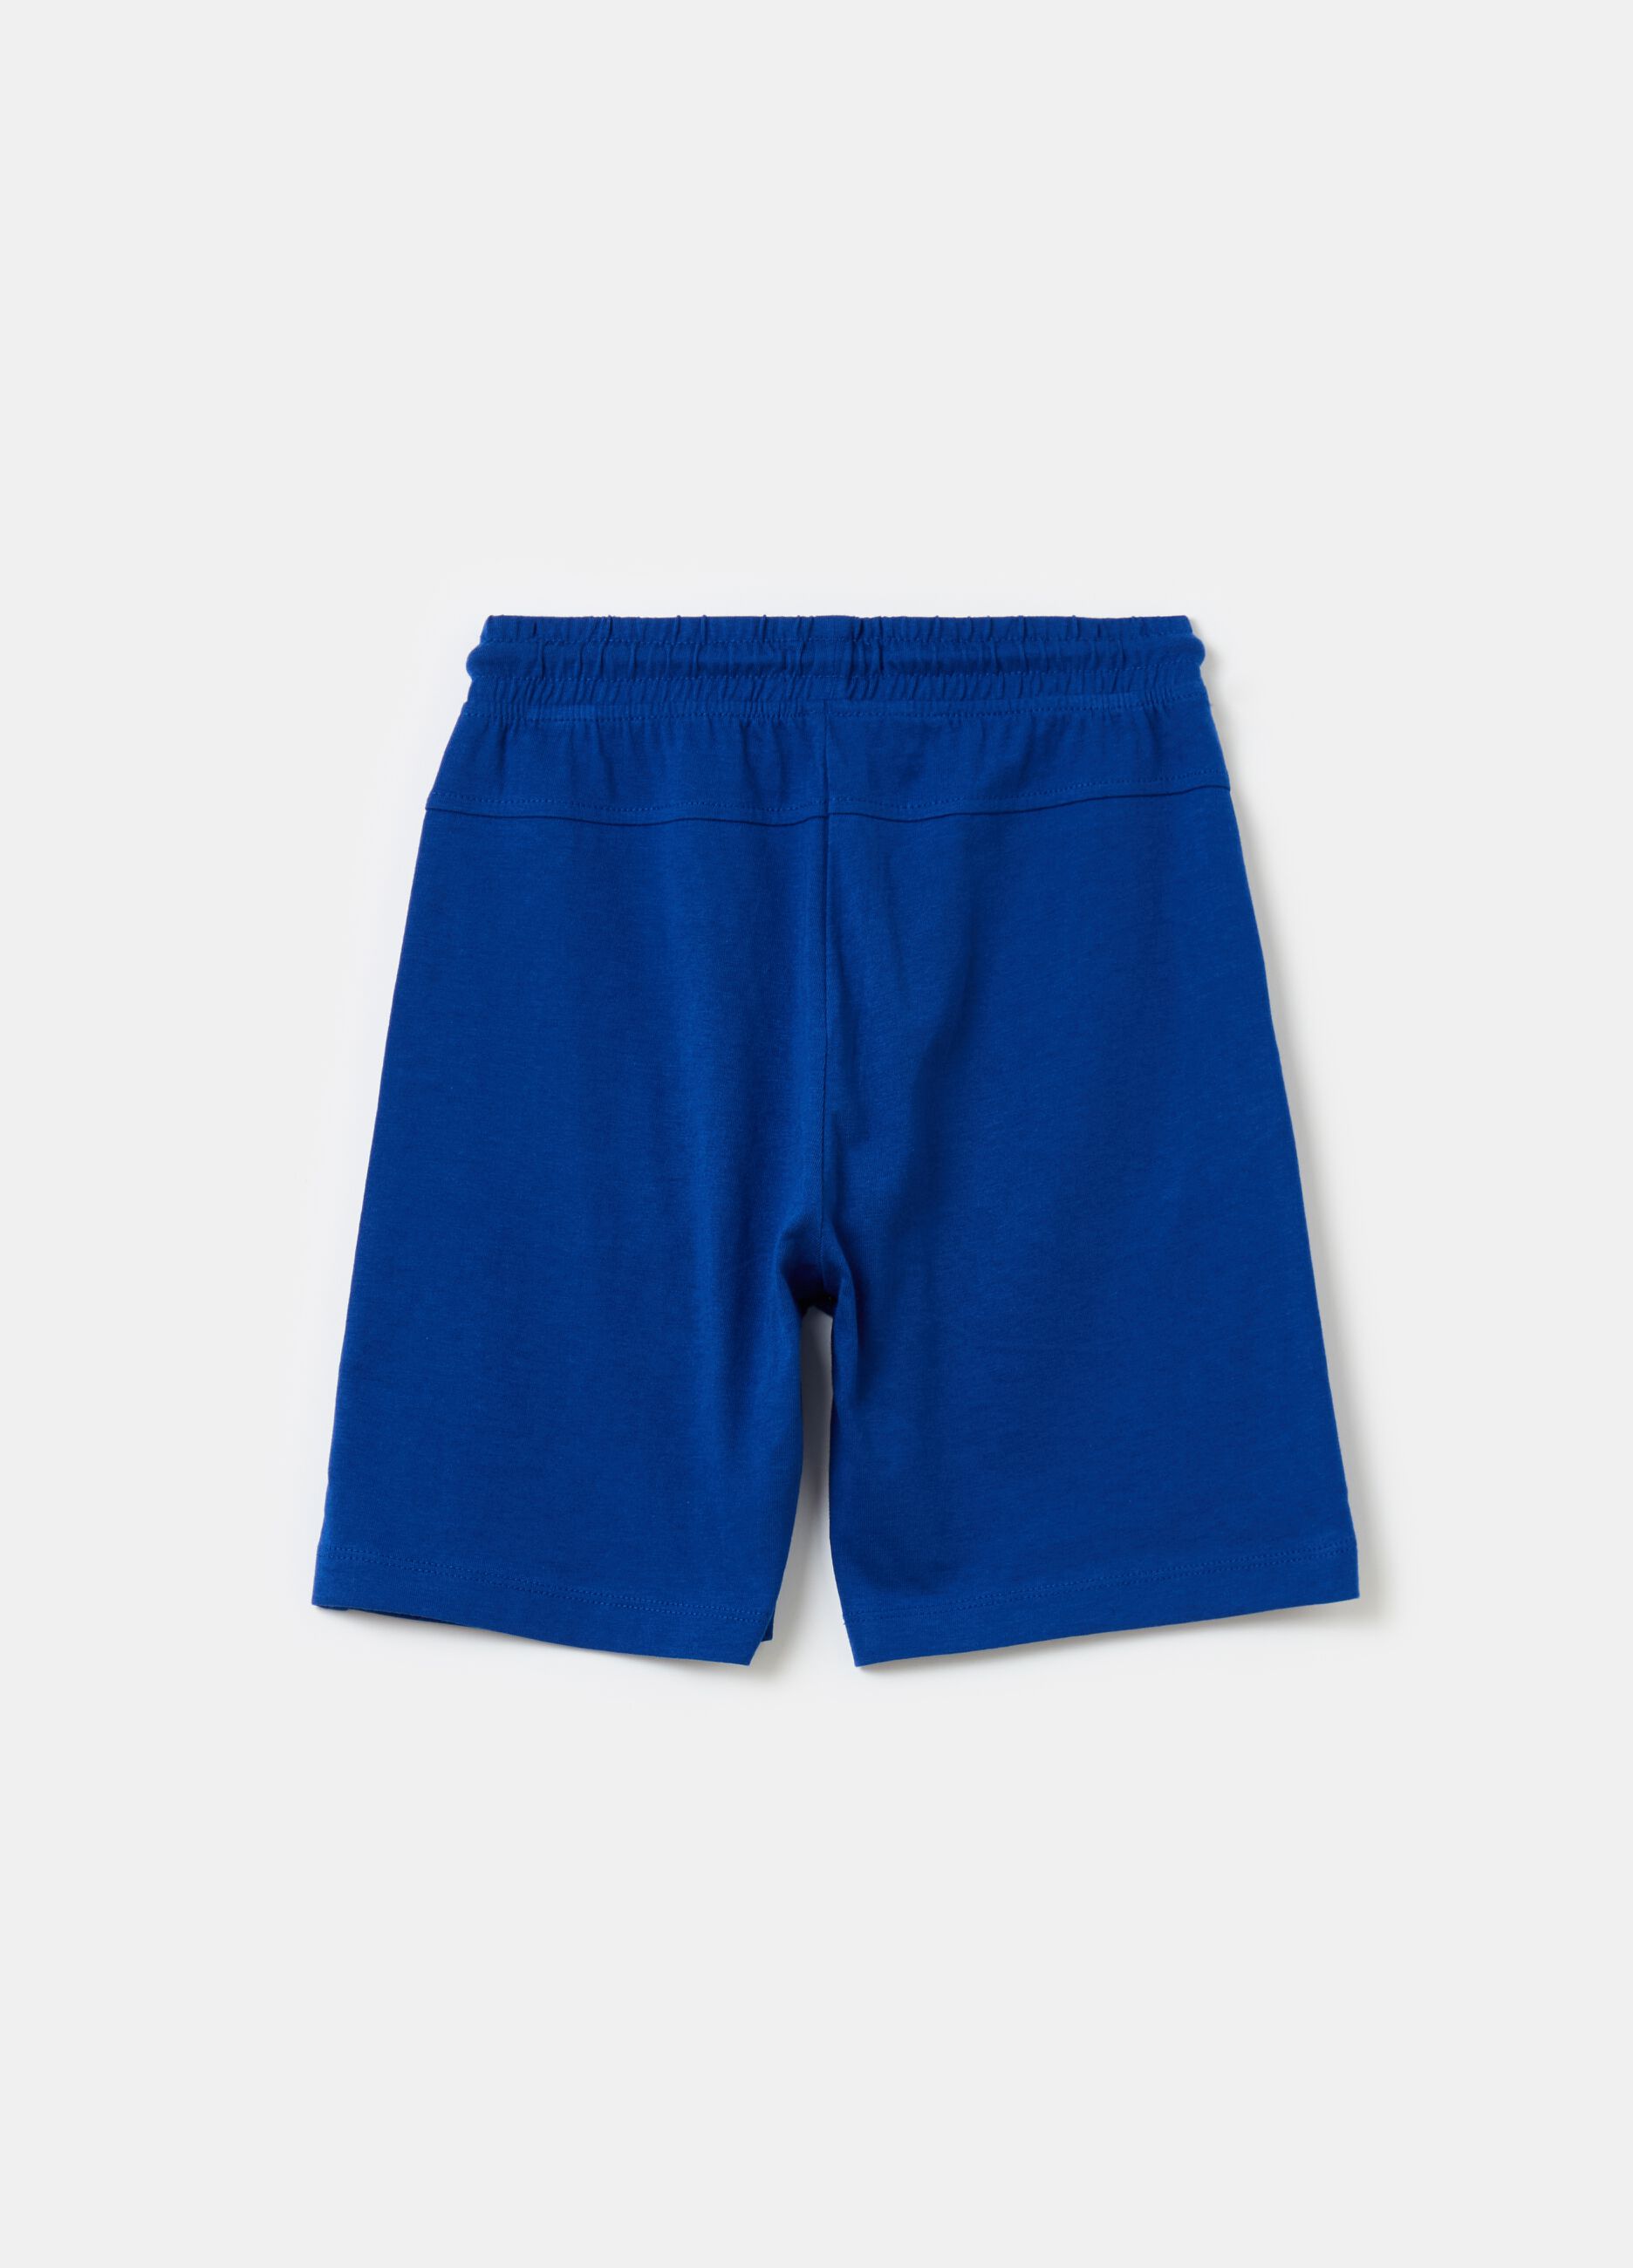 Plush Bermuda shorts with drawstring and print